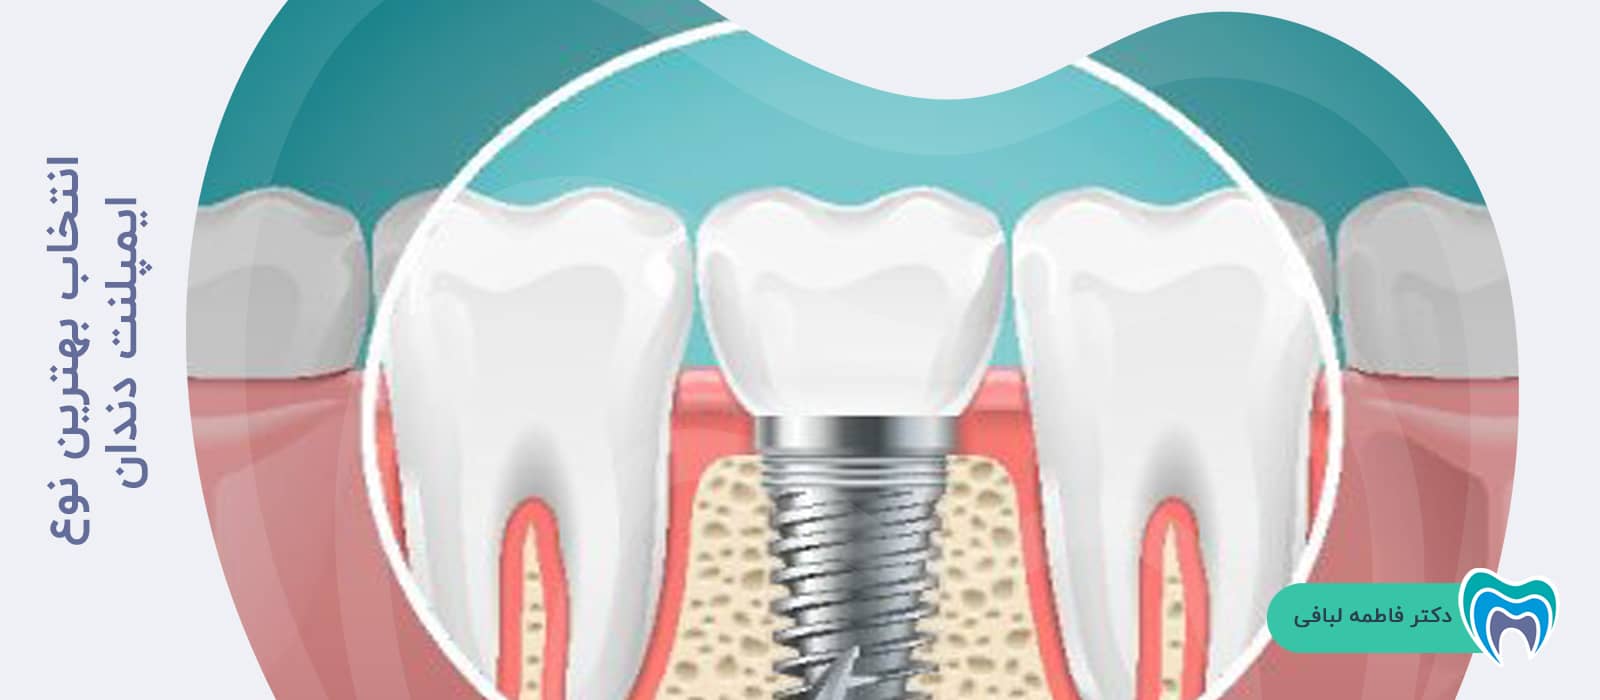 انتخاب بهترین نوع ایمپلنت دندان